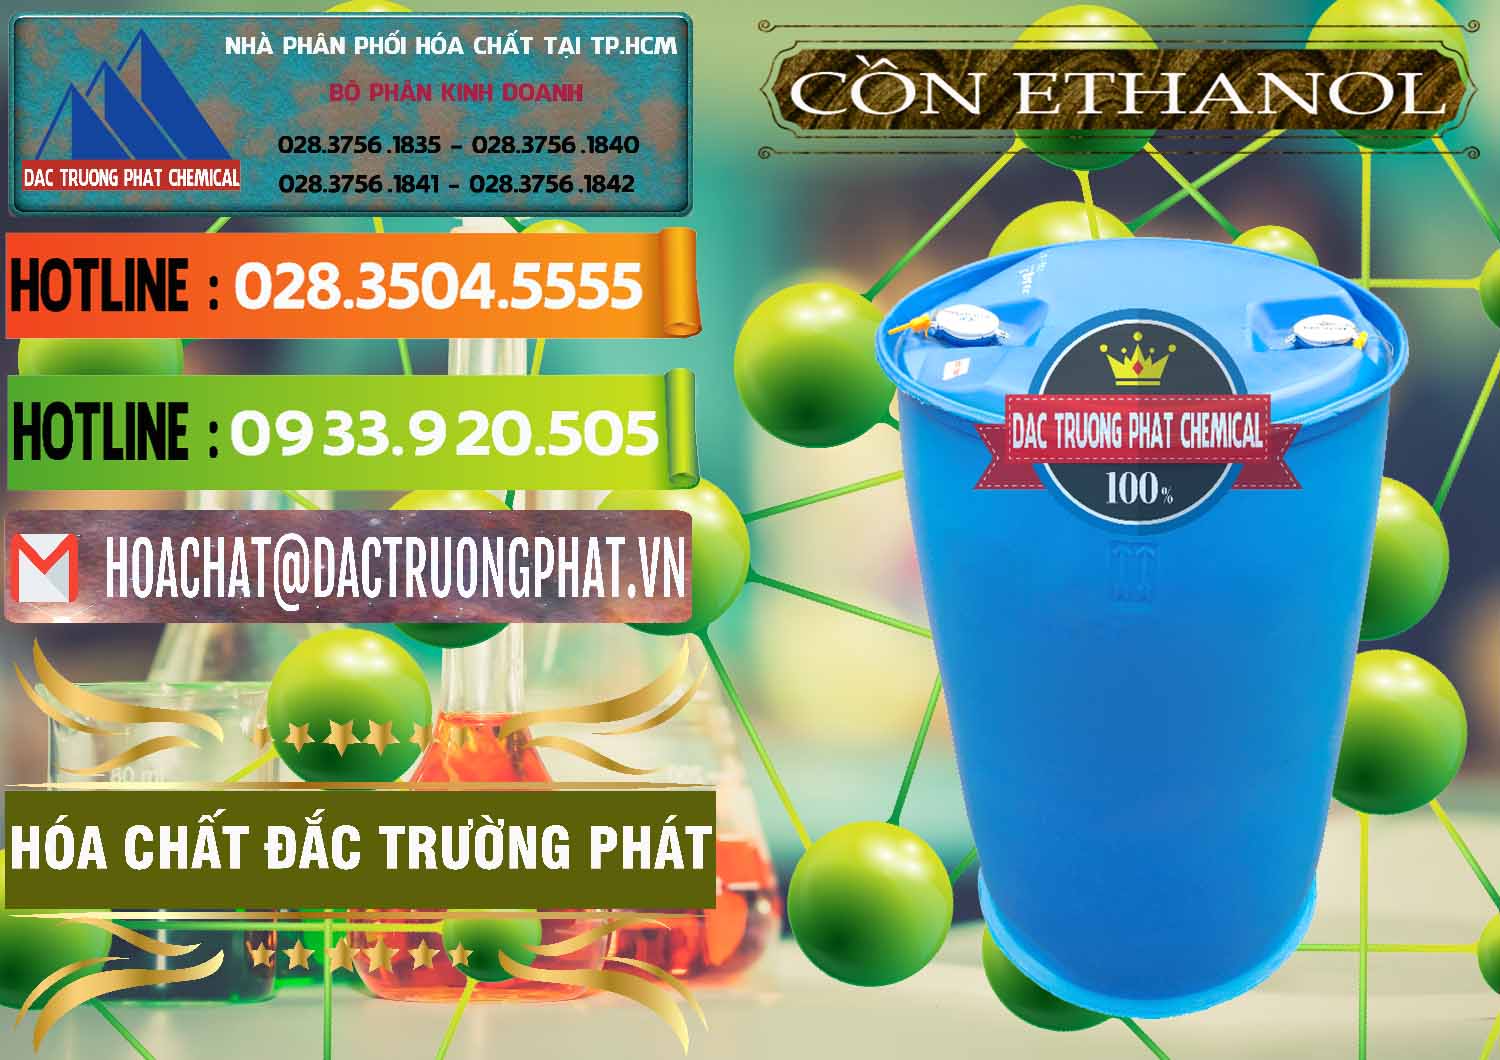 Cung cấp - bán Cồn Ethanol - C2H5OH Thực Phẩm Food Grade Việt Nam - 0330 - Công ty cung cấp và phân phối hóa chất tại TP.HCM - cungcaphoachat.com.vn